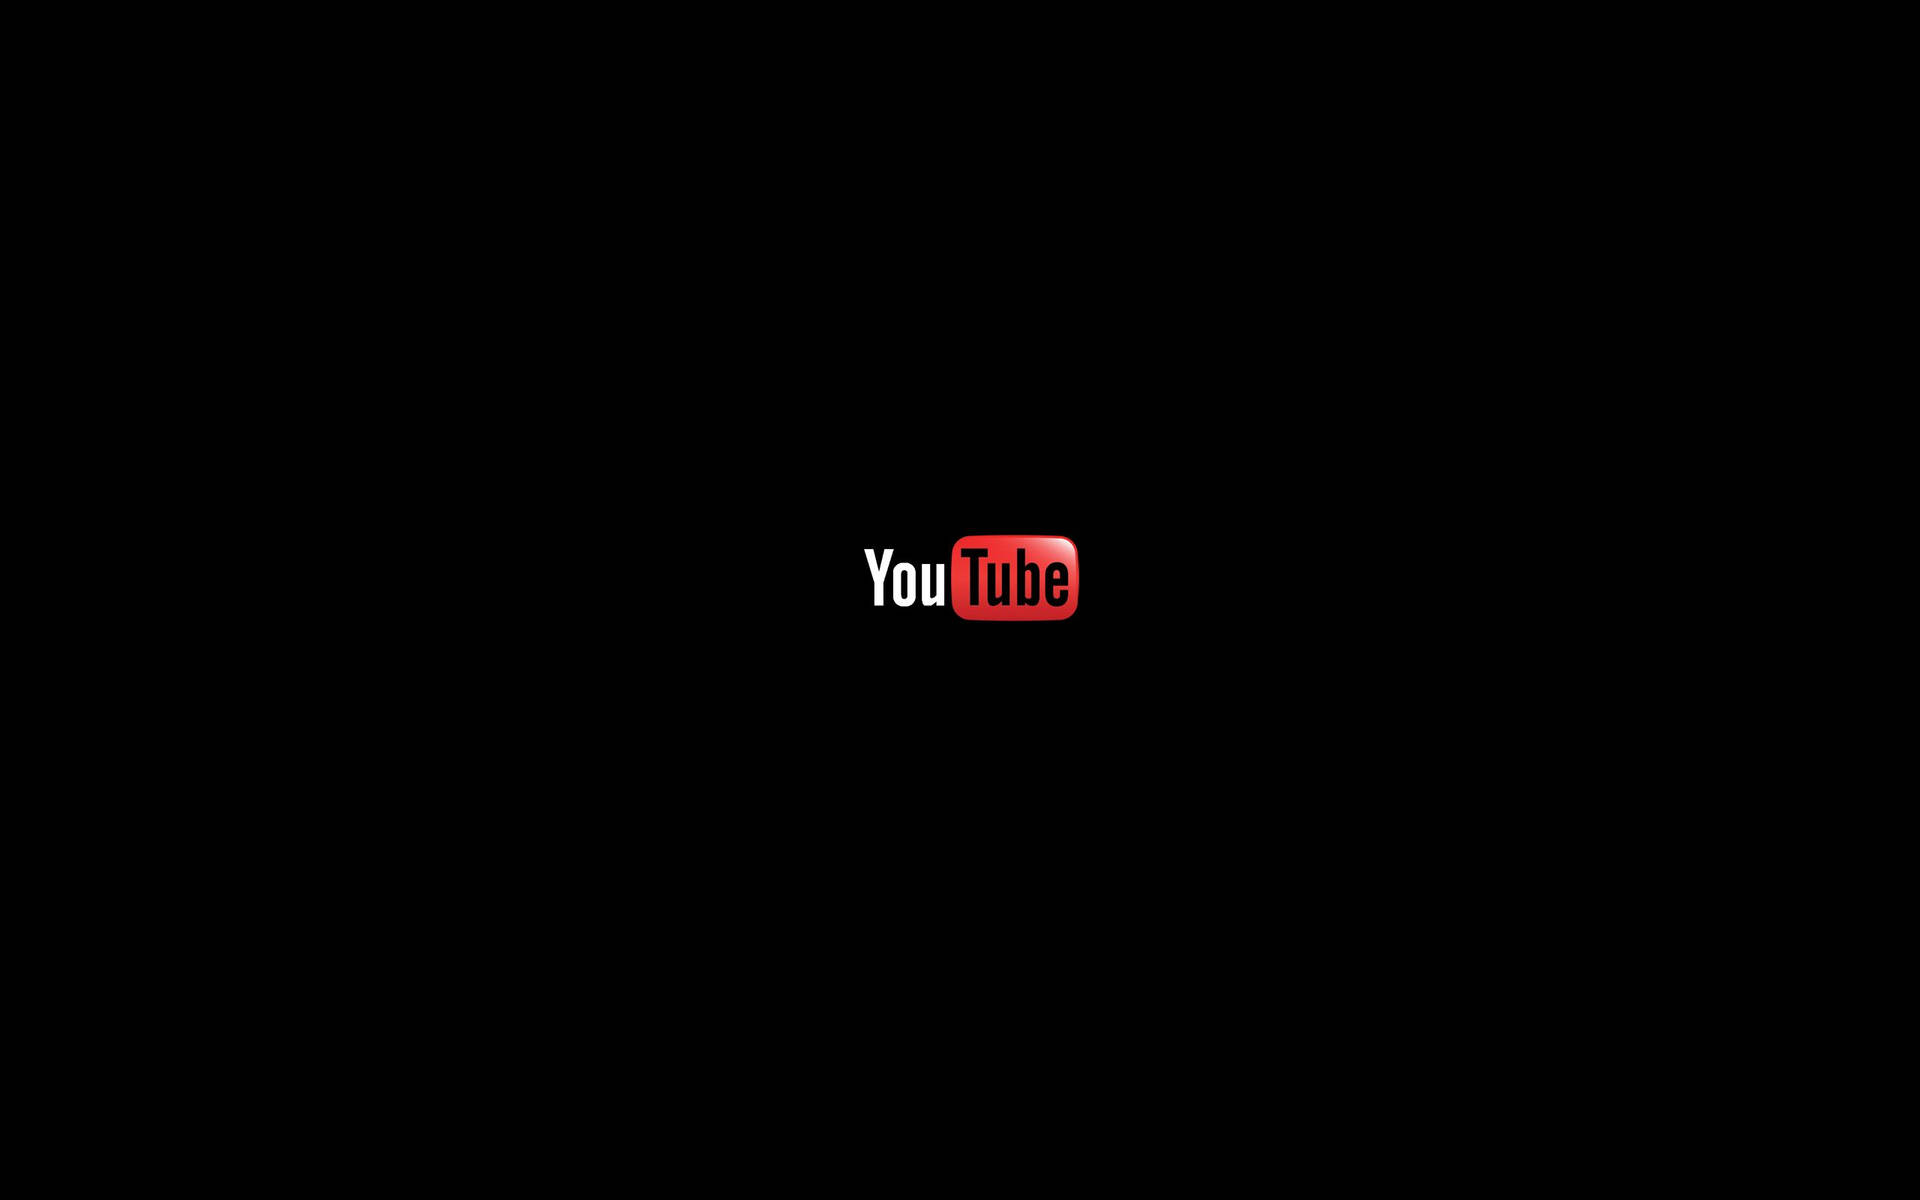 Small Youtube Logo On Black Background Background